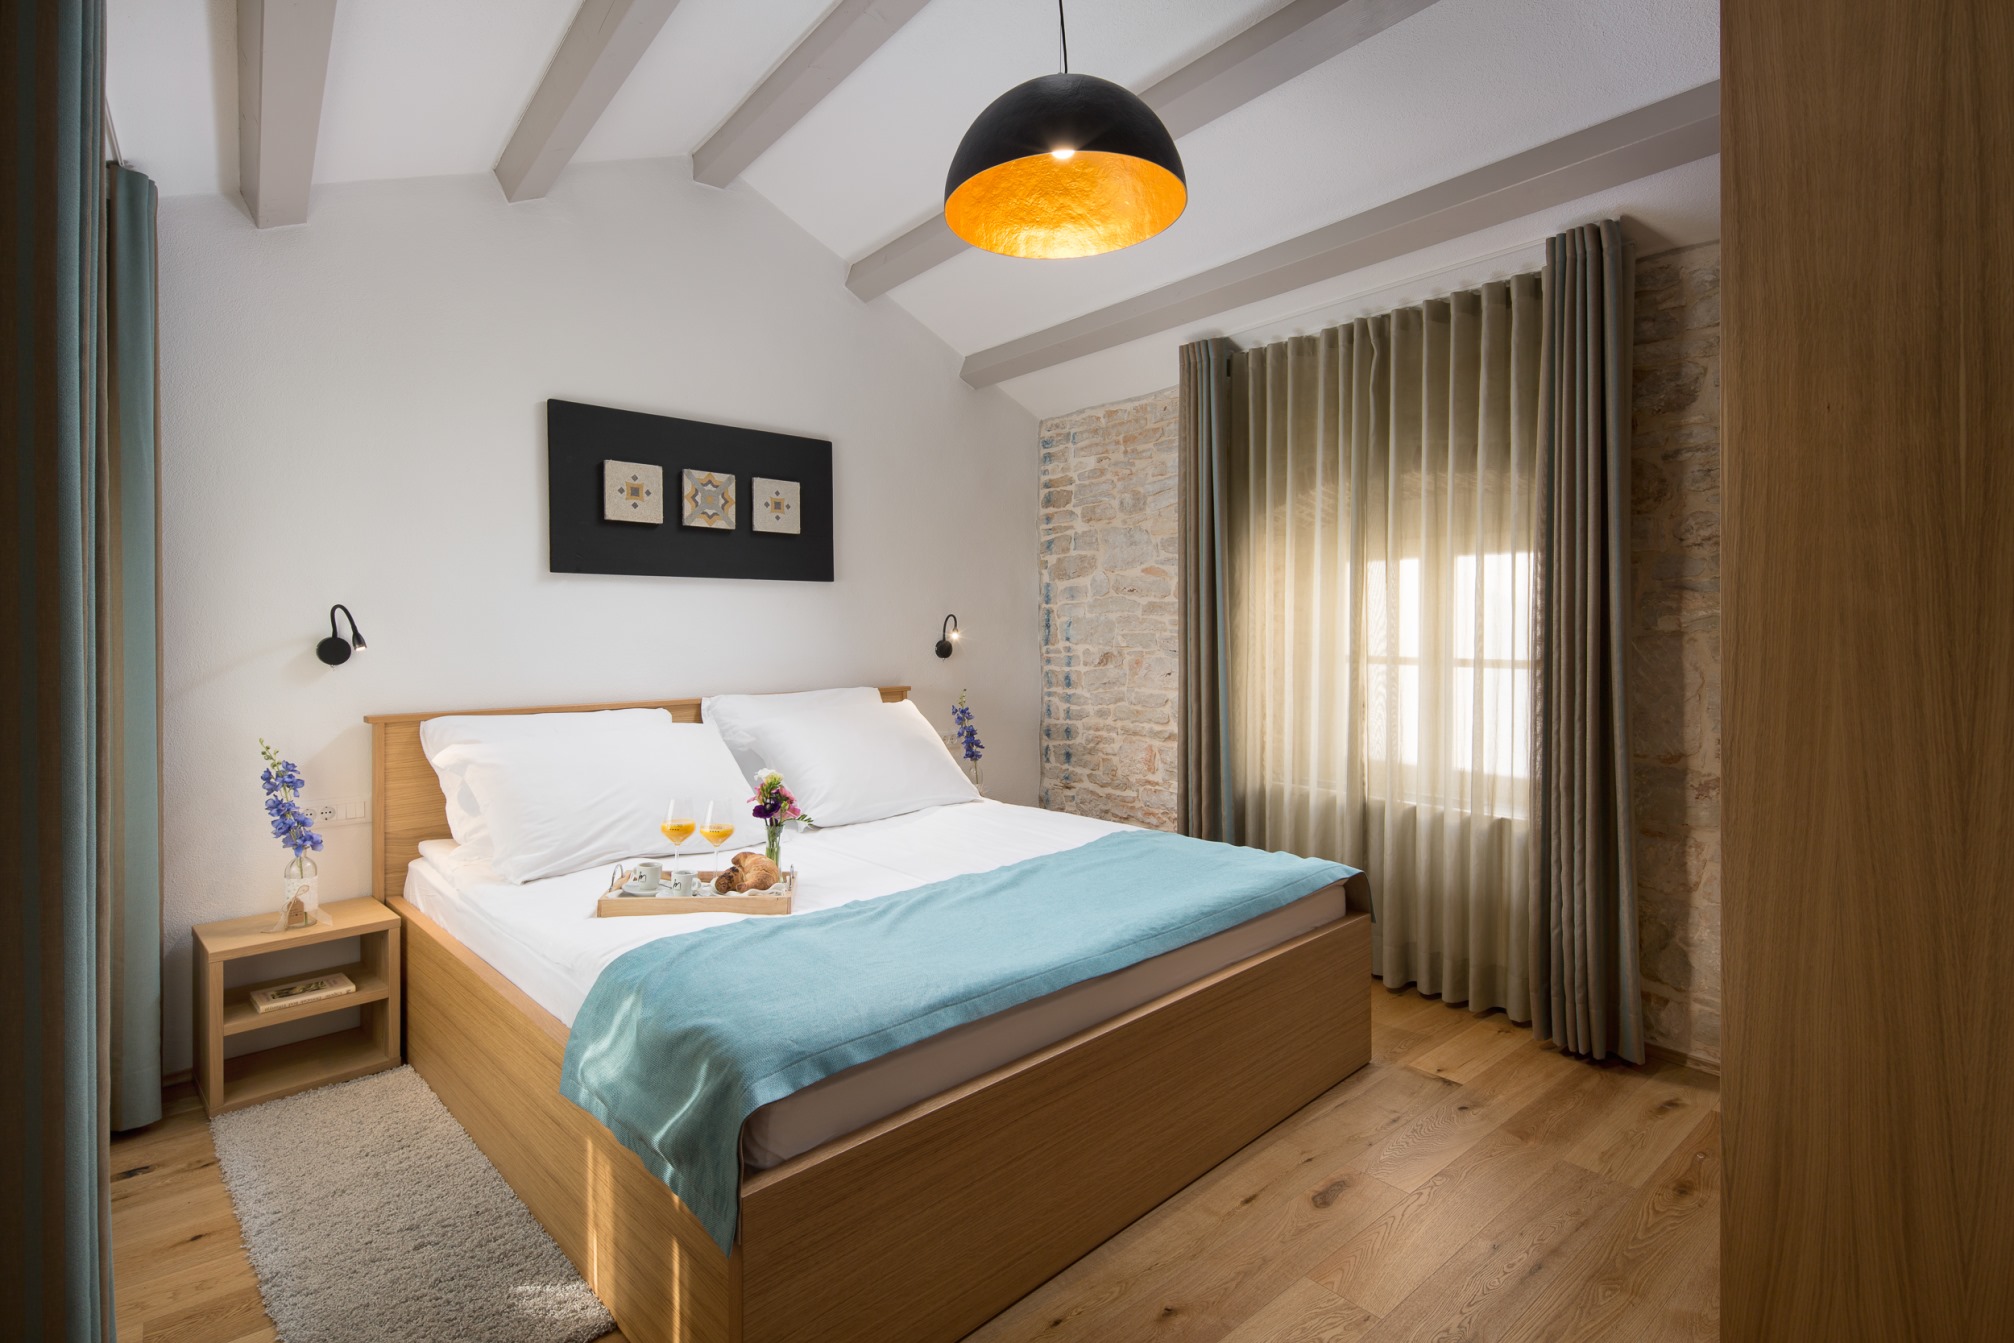 La Grisa: grad-hotel u kojem ćete doživjeti dušu Istre